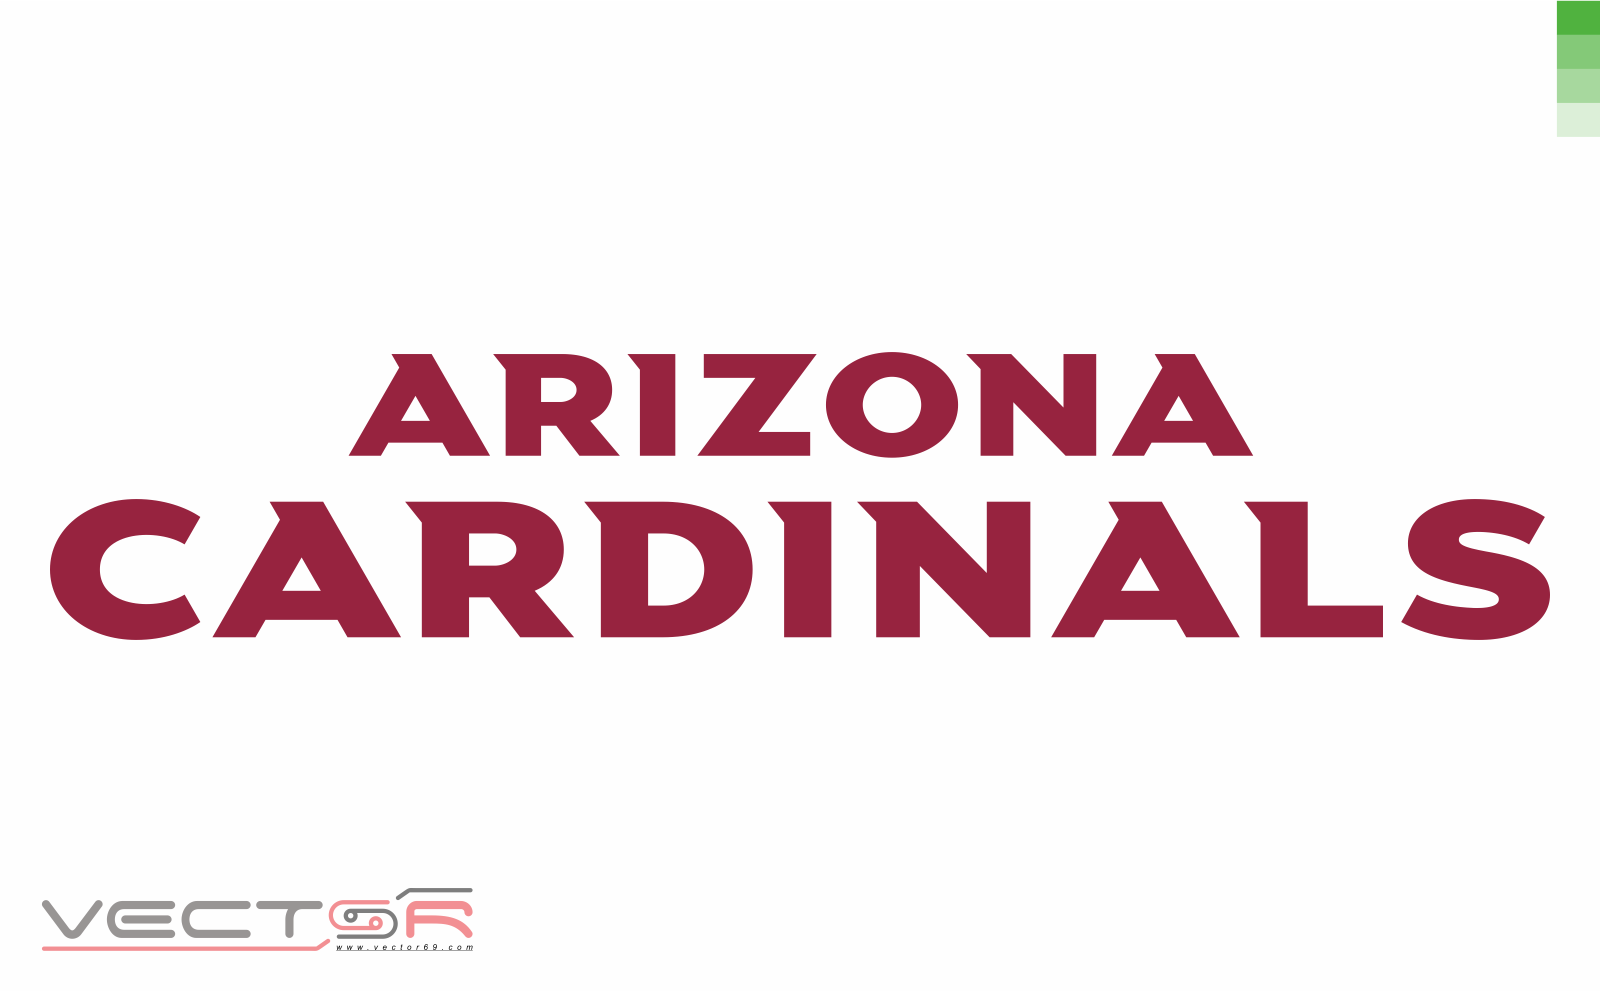 Arizona Cardinals Wordmark - Download Vector File CDR (CorelDraw)